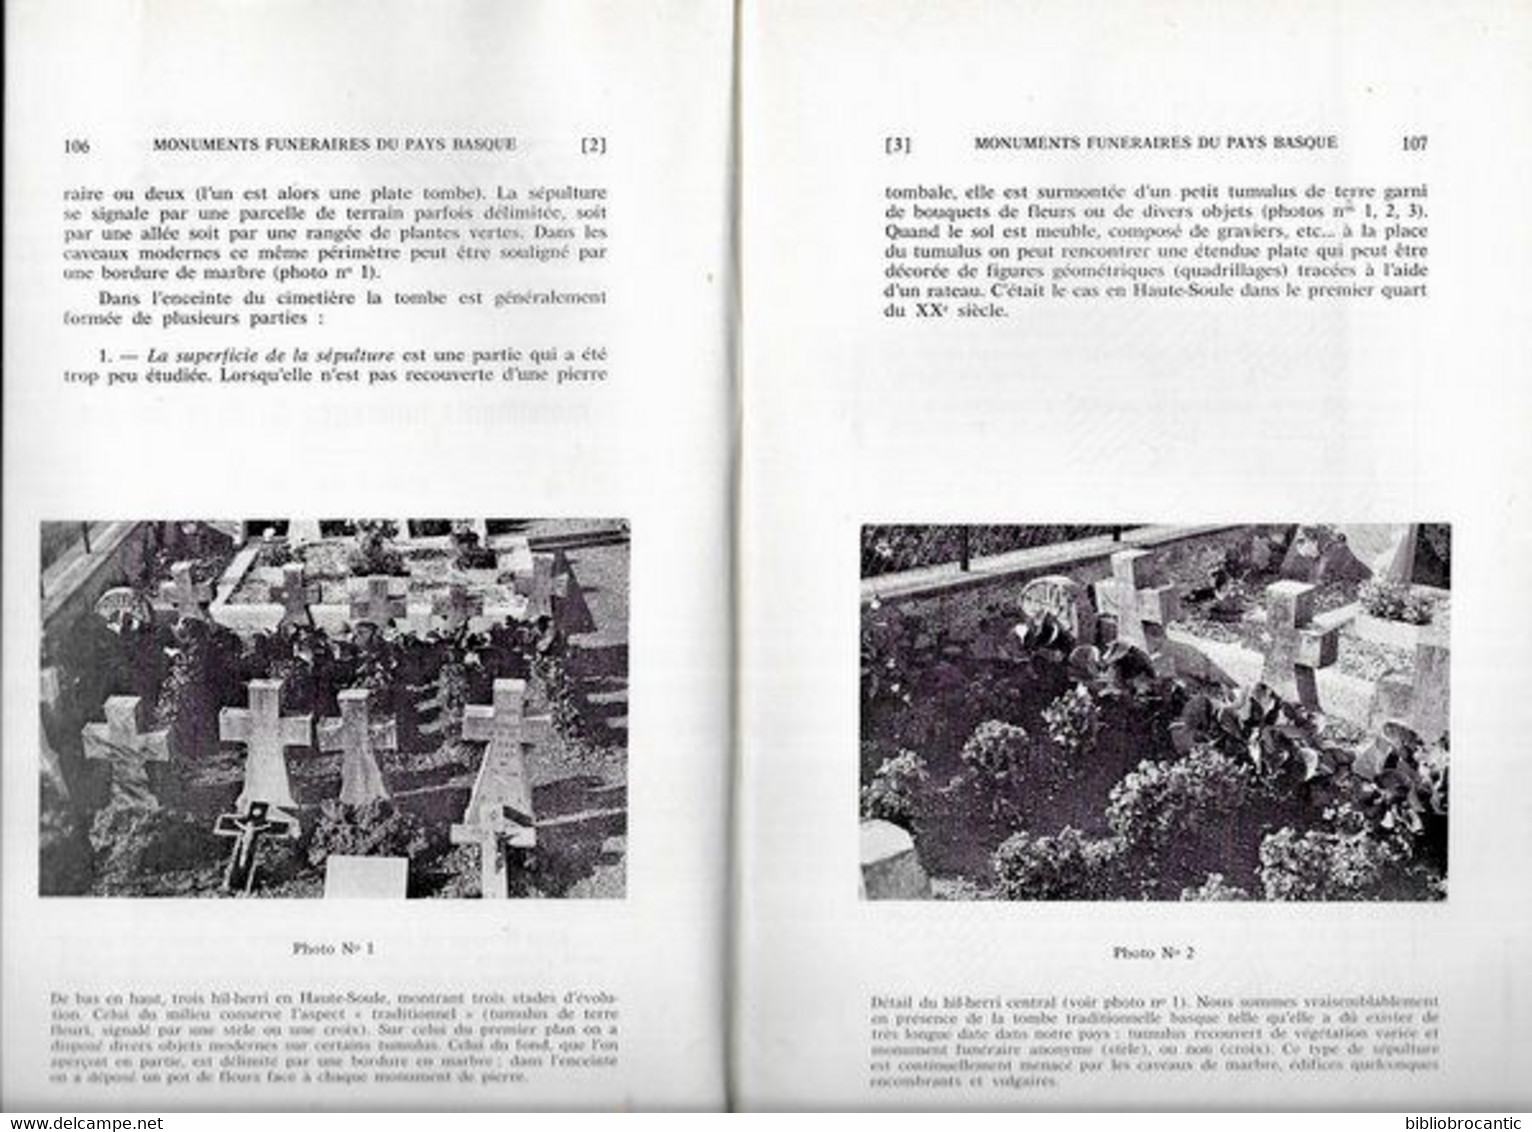 BULLETIN Du MUSEE BASQUE N°77(3°T.1977) < ETUDE DES MONUMENTS FUNERAIRES PAYS BASQUE 1 /Sommaire.Scan - Pays Basque